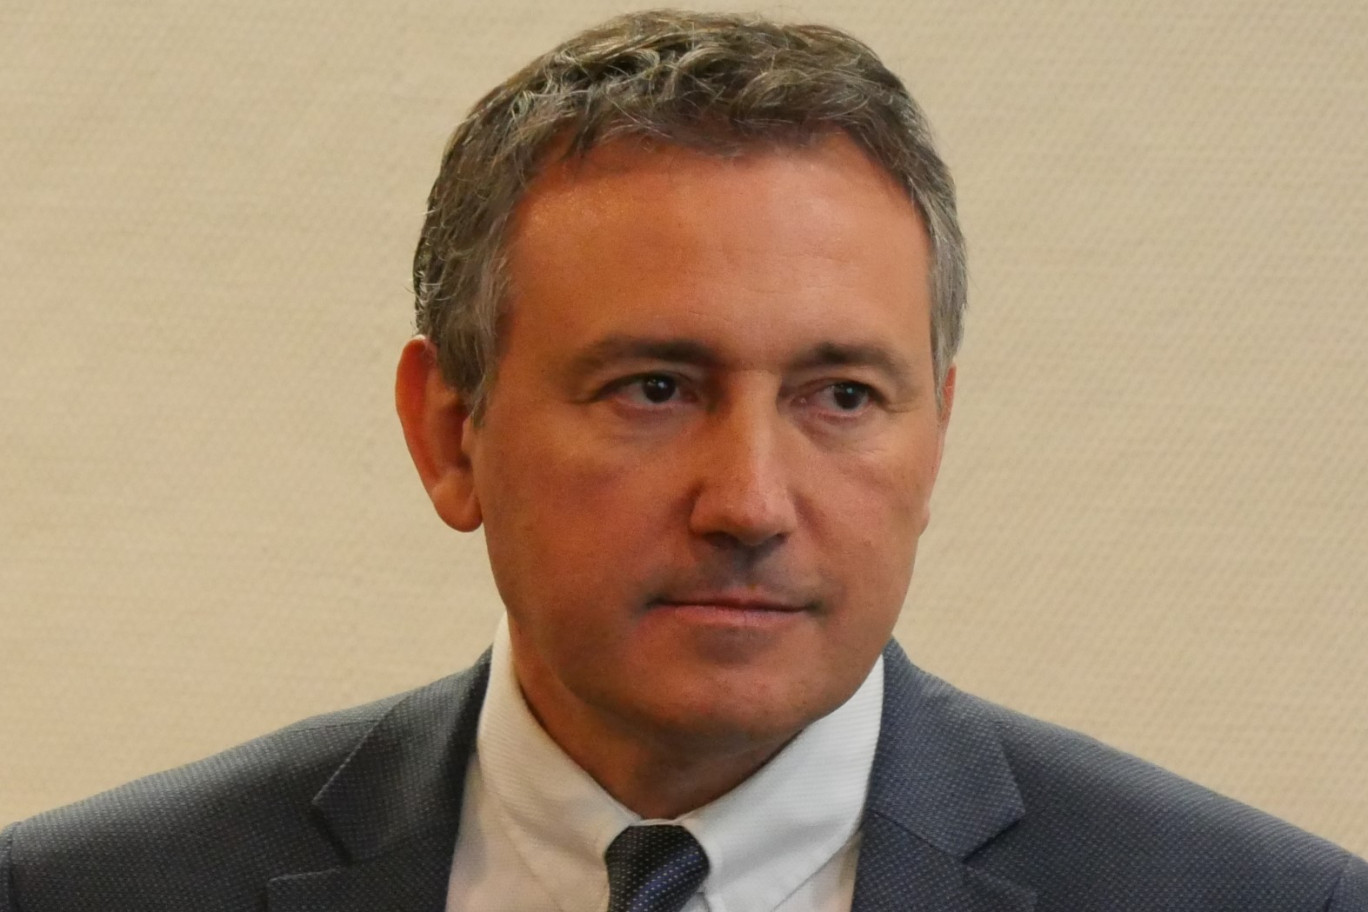  Olivier Torrès, professeur à l’université de Montpellier (LABEX Entreprendre), et président fondateur d’Amarok. (c)Université de Montpellier/MBS 